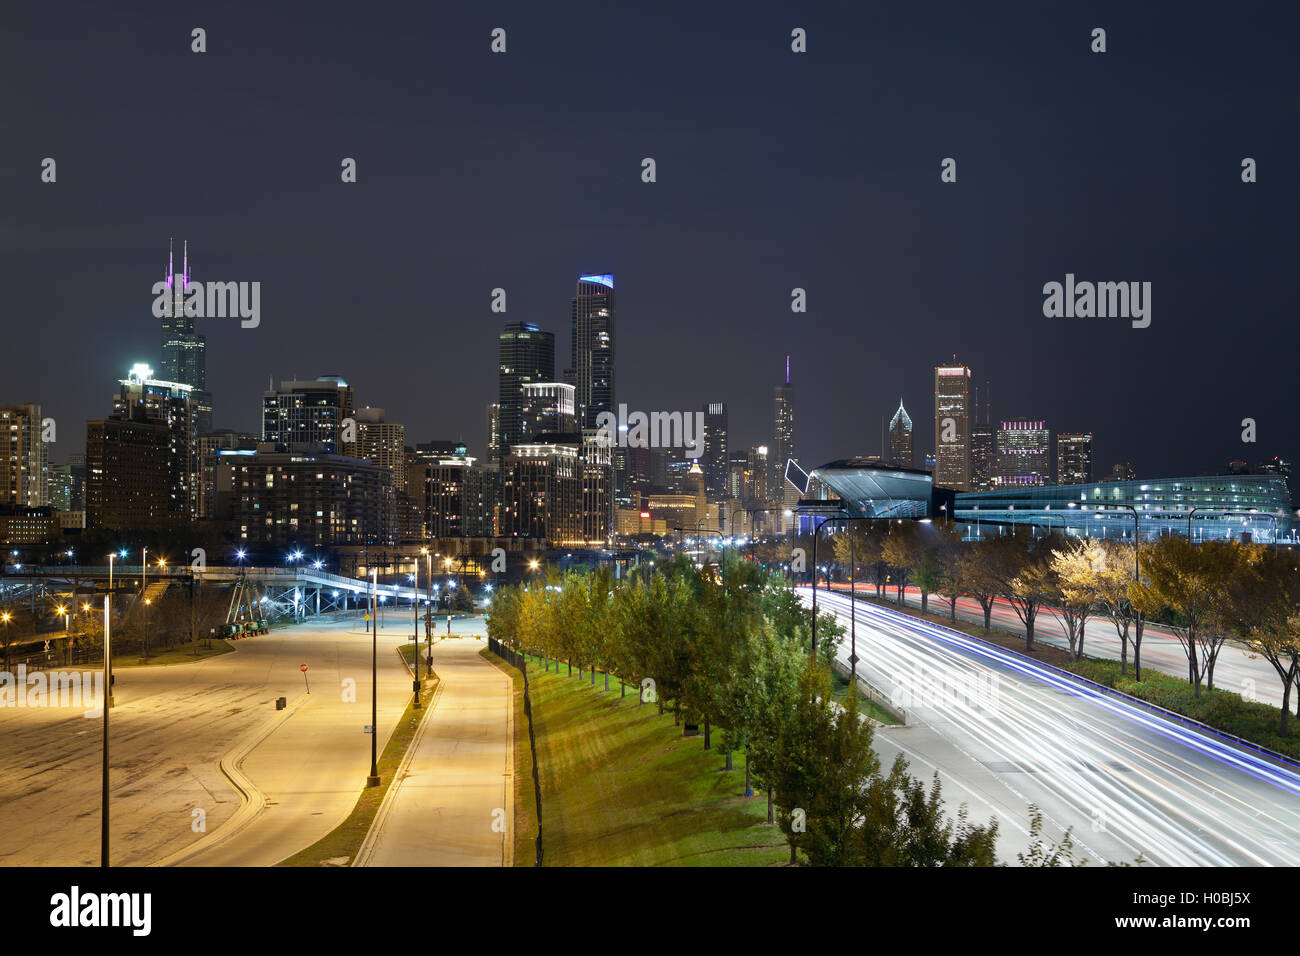 Droit de Chicago skyline at night Banque D'Images